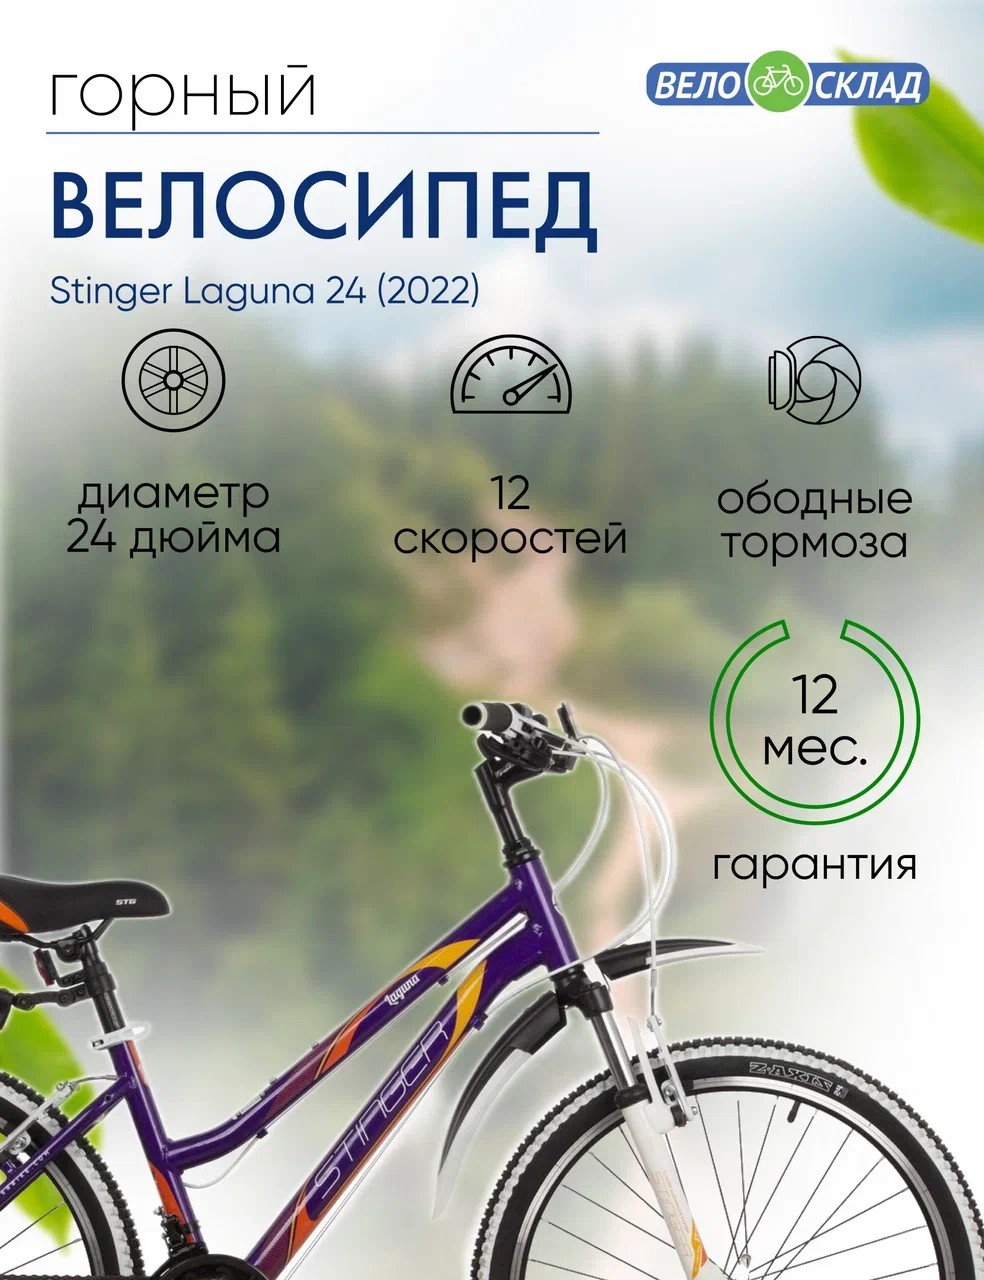 Подростковый велосипед Stinger Laguna 24, год 2022, цвет Фиолетовый, ростовка 14